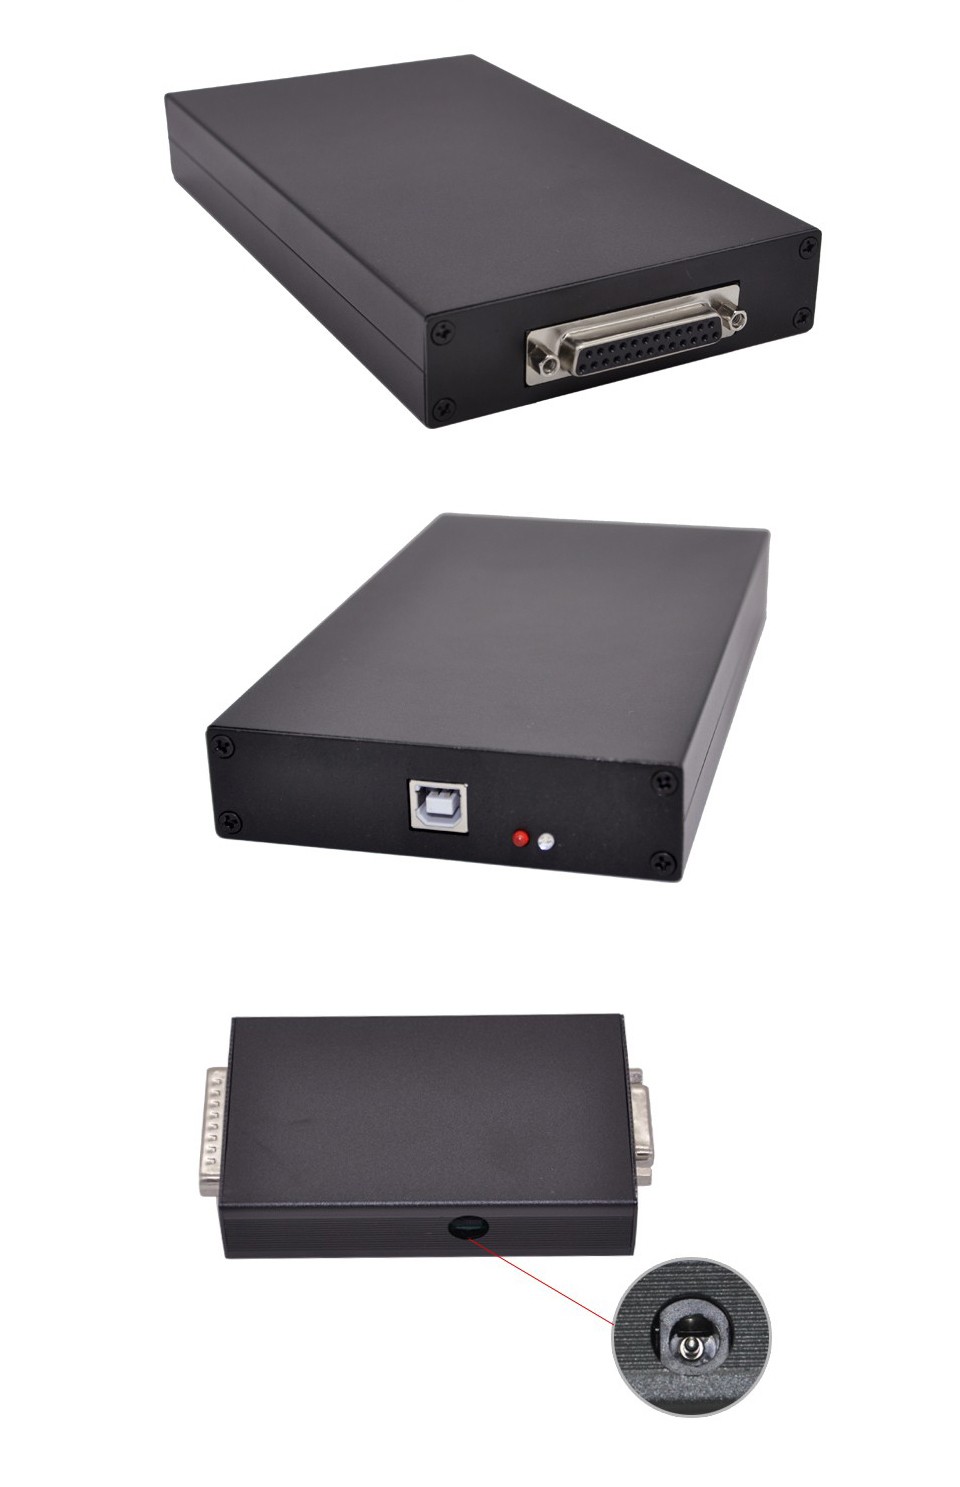 Super-scanner-2015-Top-selling-KESS-V2-OBD2-Manager-Tuning-Kit-V2-10-multi-language-ecu-1